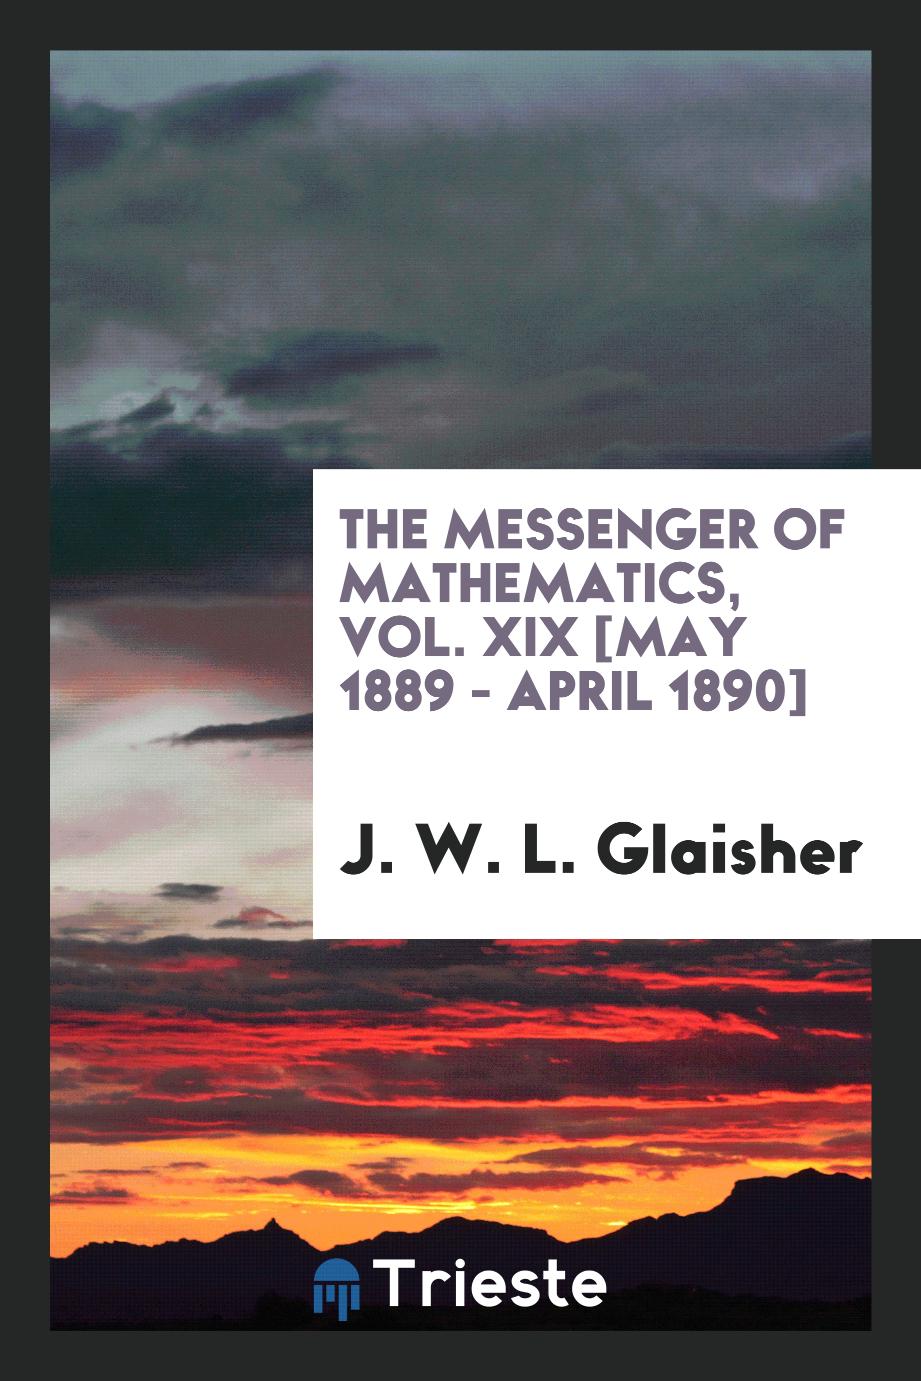 The Messenger of Mathematics, Vol. XIX [May 1889 - April 1890]